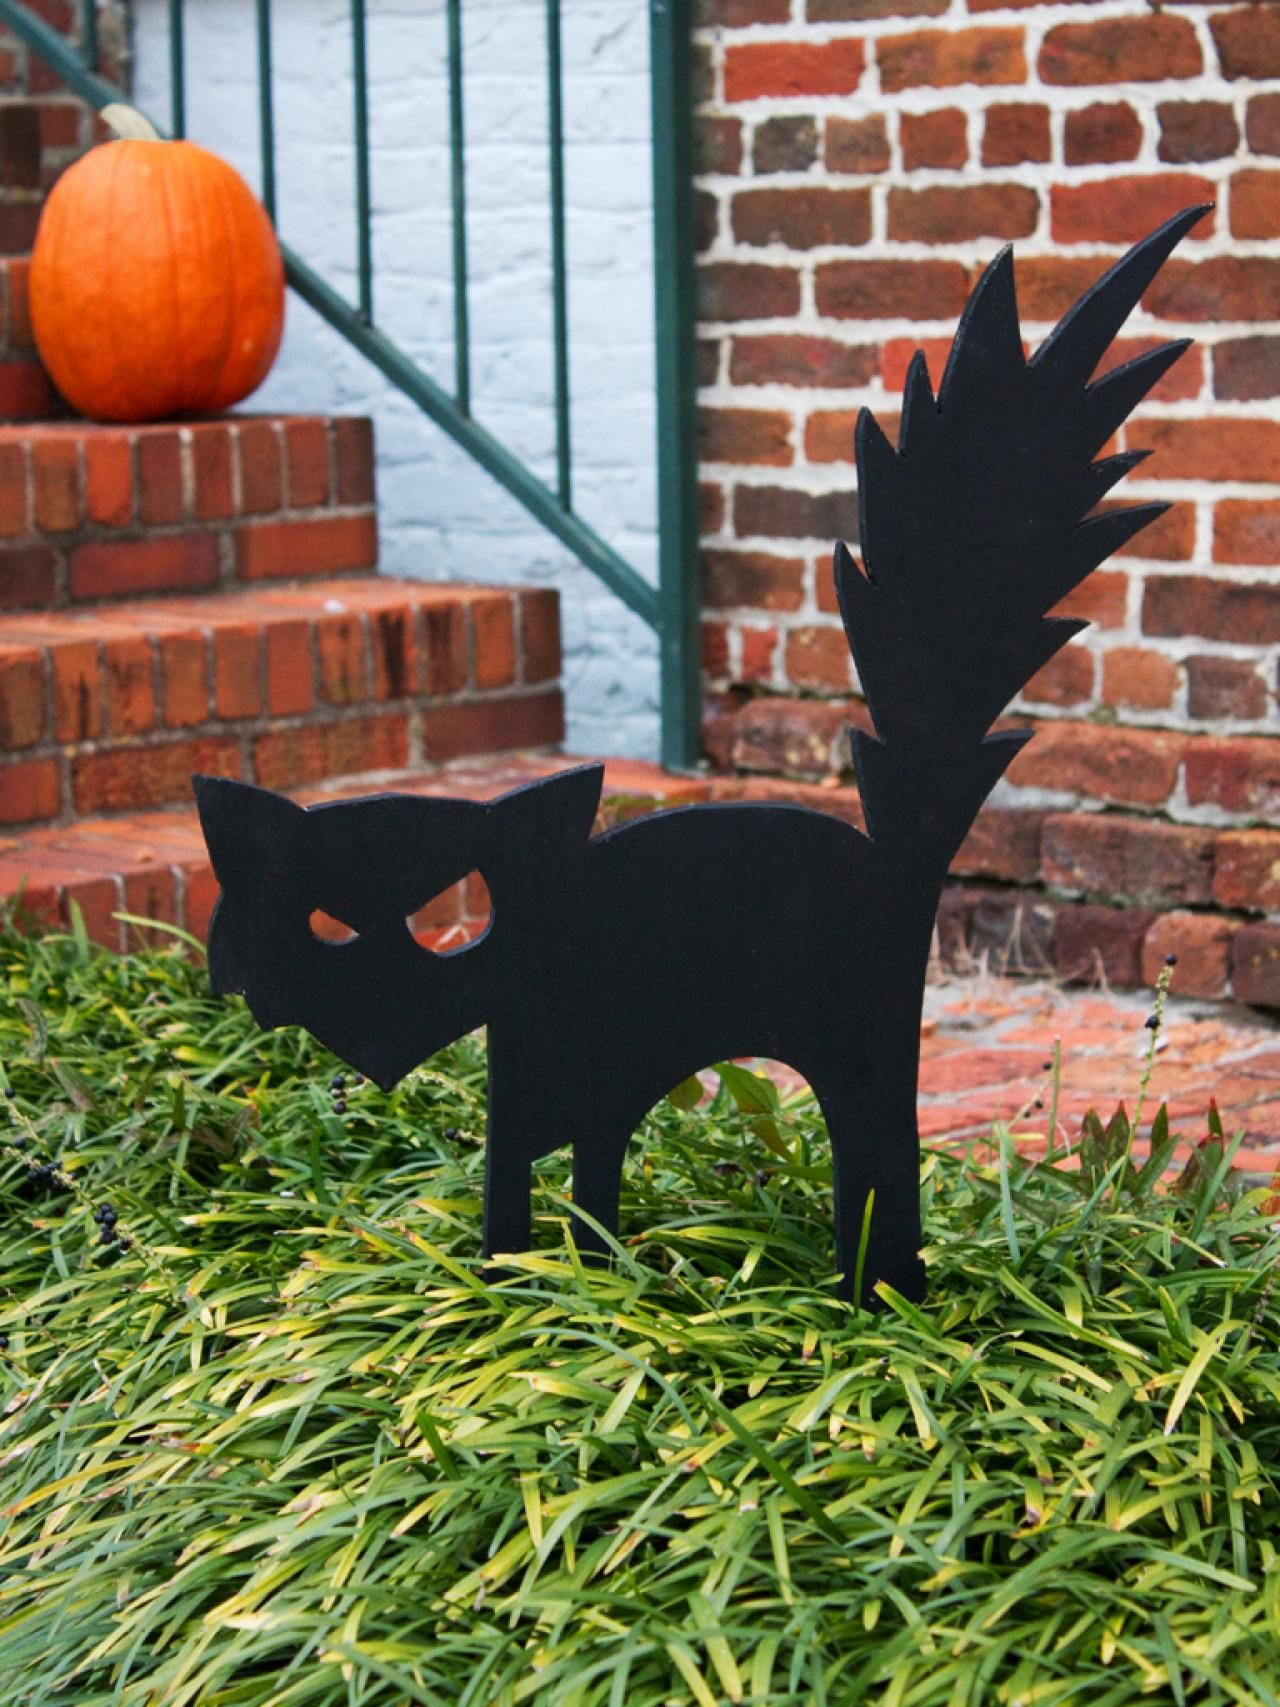 Startled Stray Cat -   Outdoor Halloween Decor Ideas